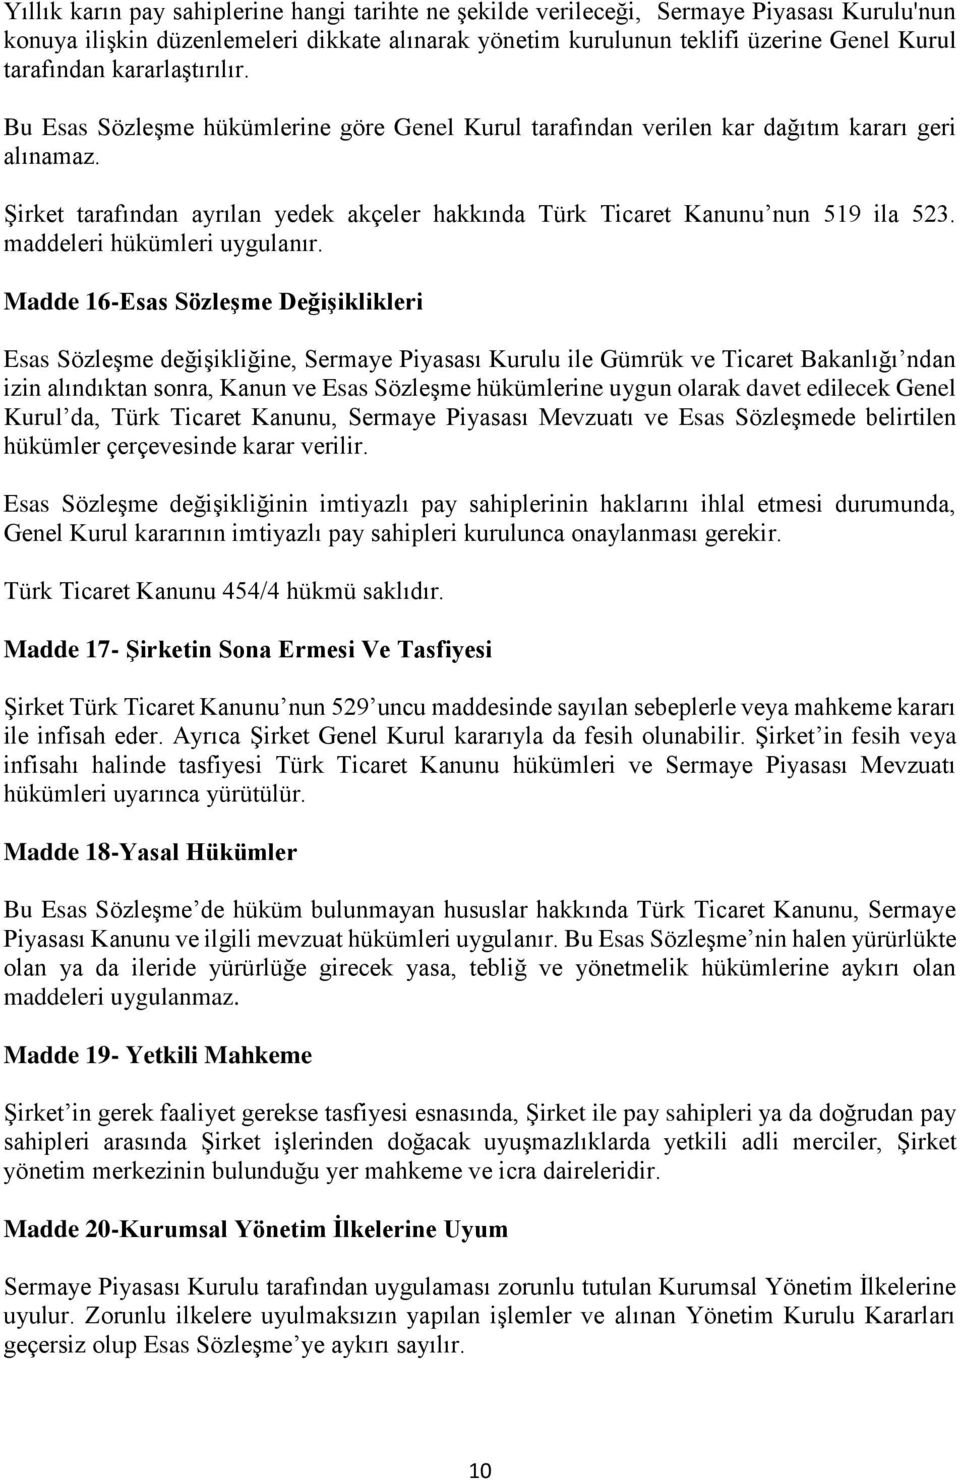 Şirket tarafından ayrılan yedek akçeler hakkında Türk Ticaret Kanunu nun 519 ila 523. maddeleri hükümleri uygulanır.